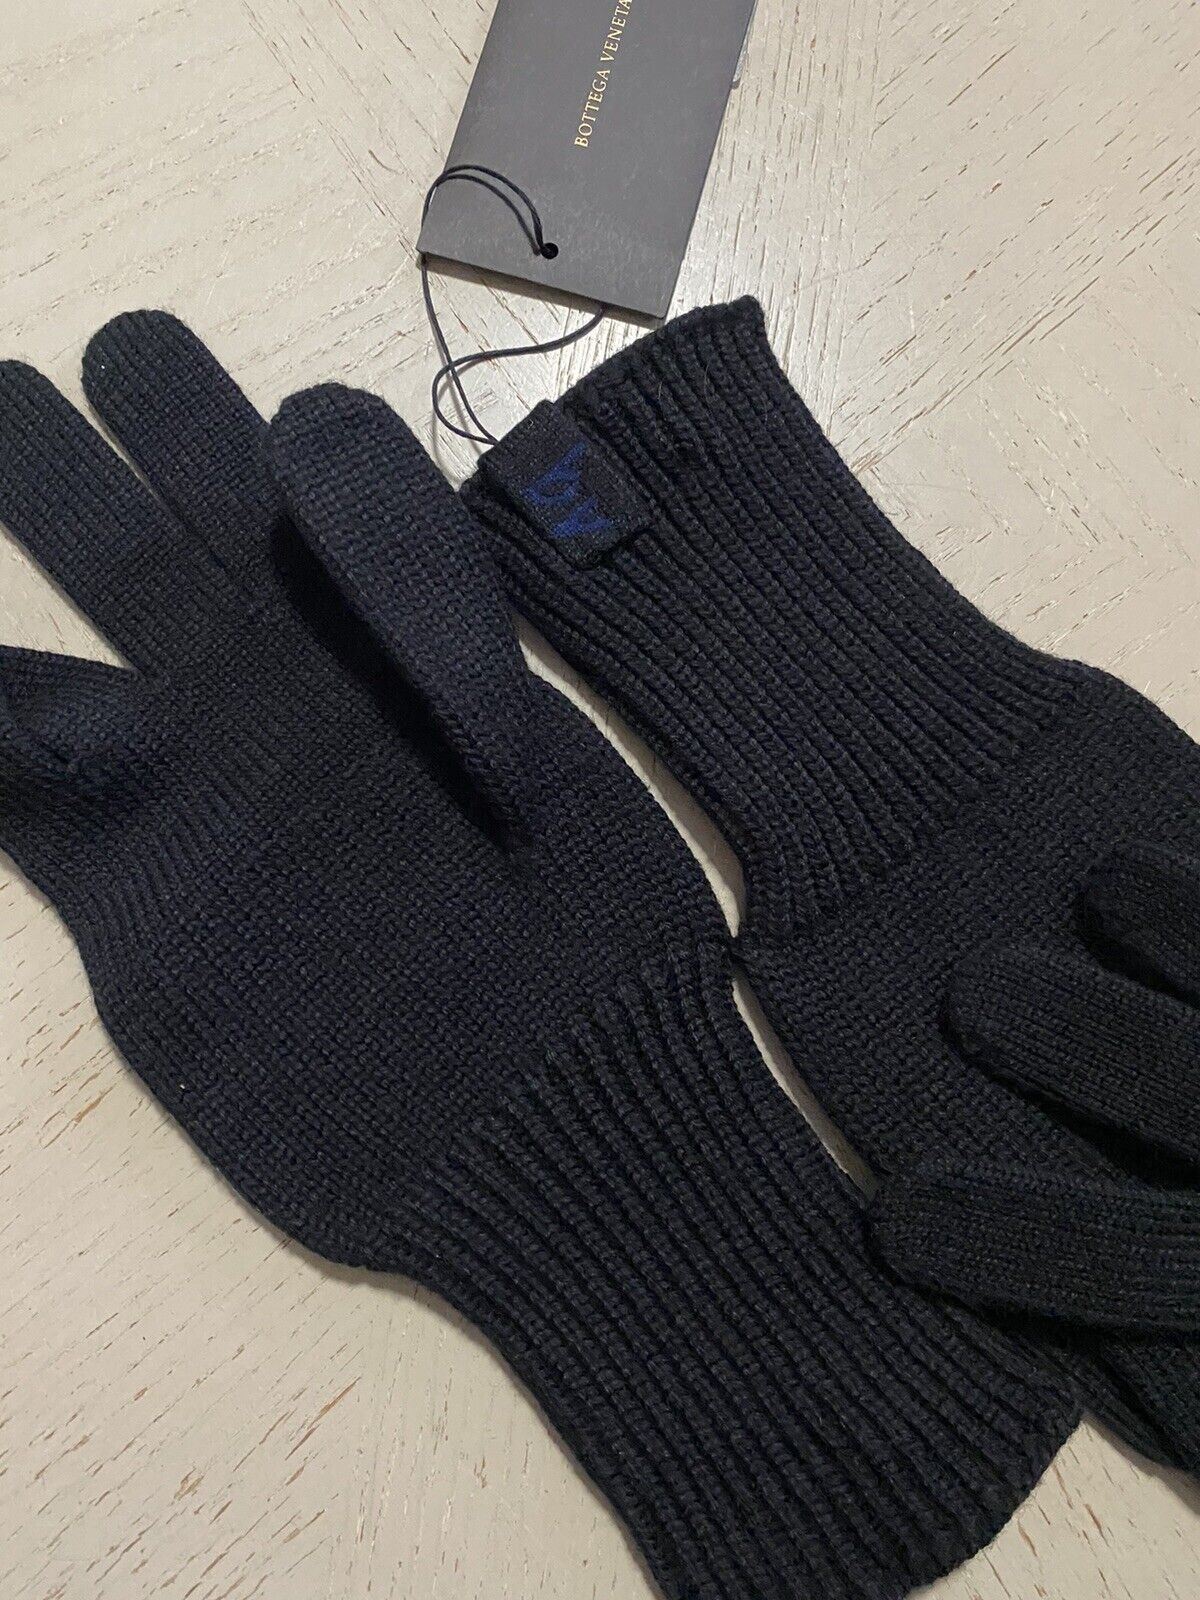 NWT Шерстяные перчатки Bottega Veneta, черные, размер M, Италия